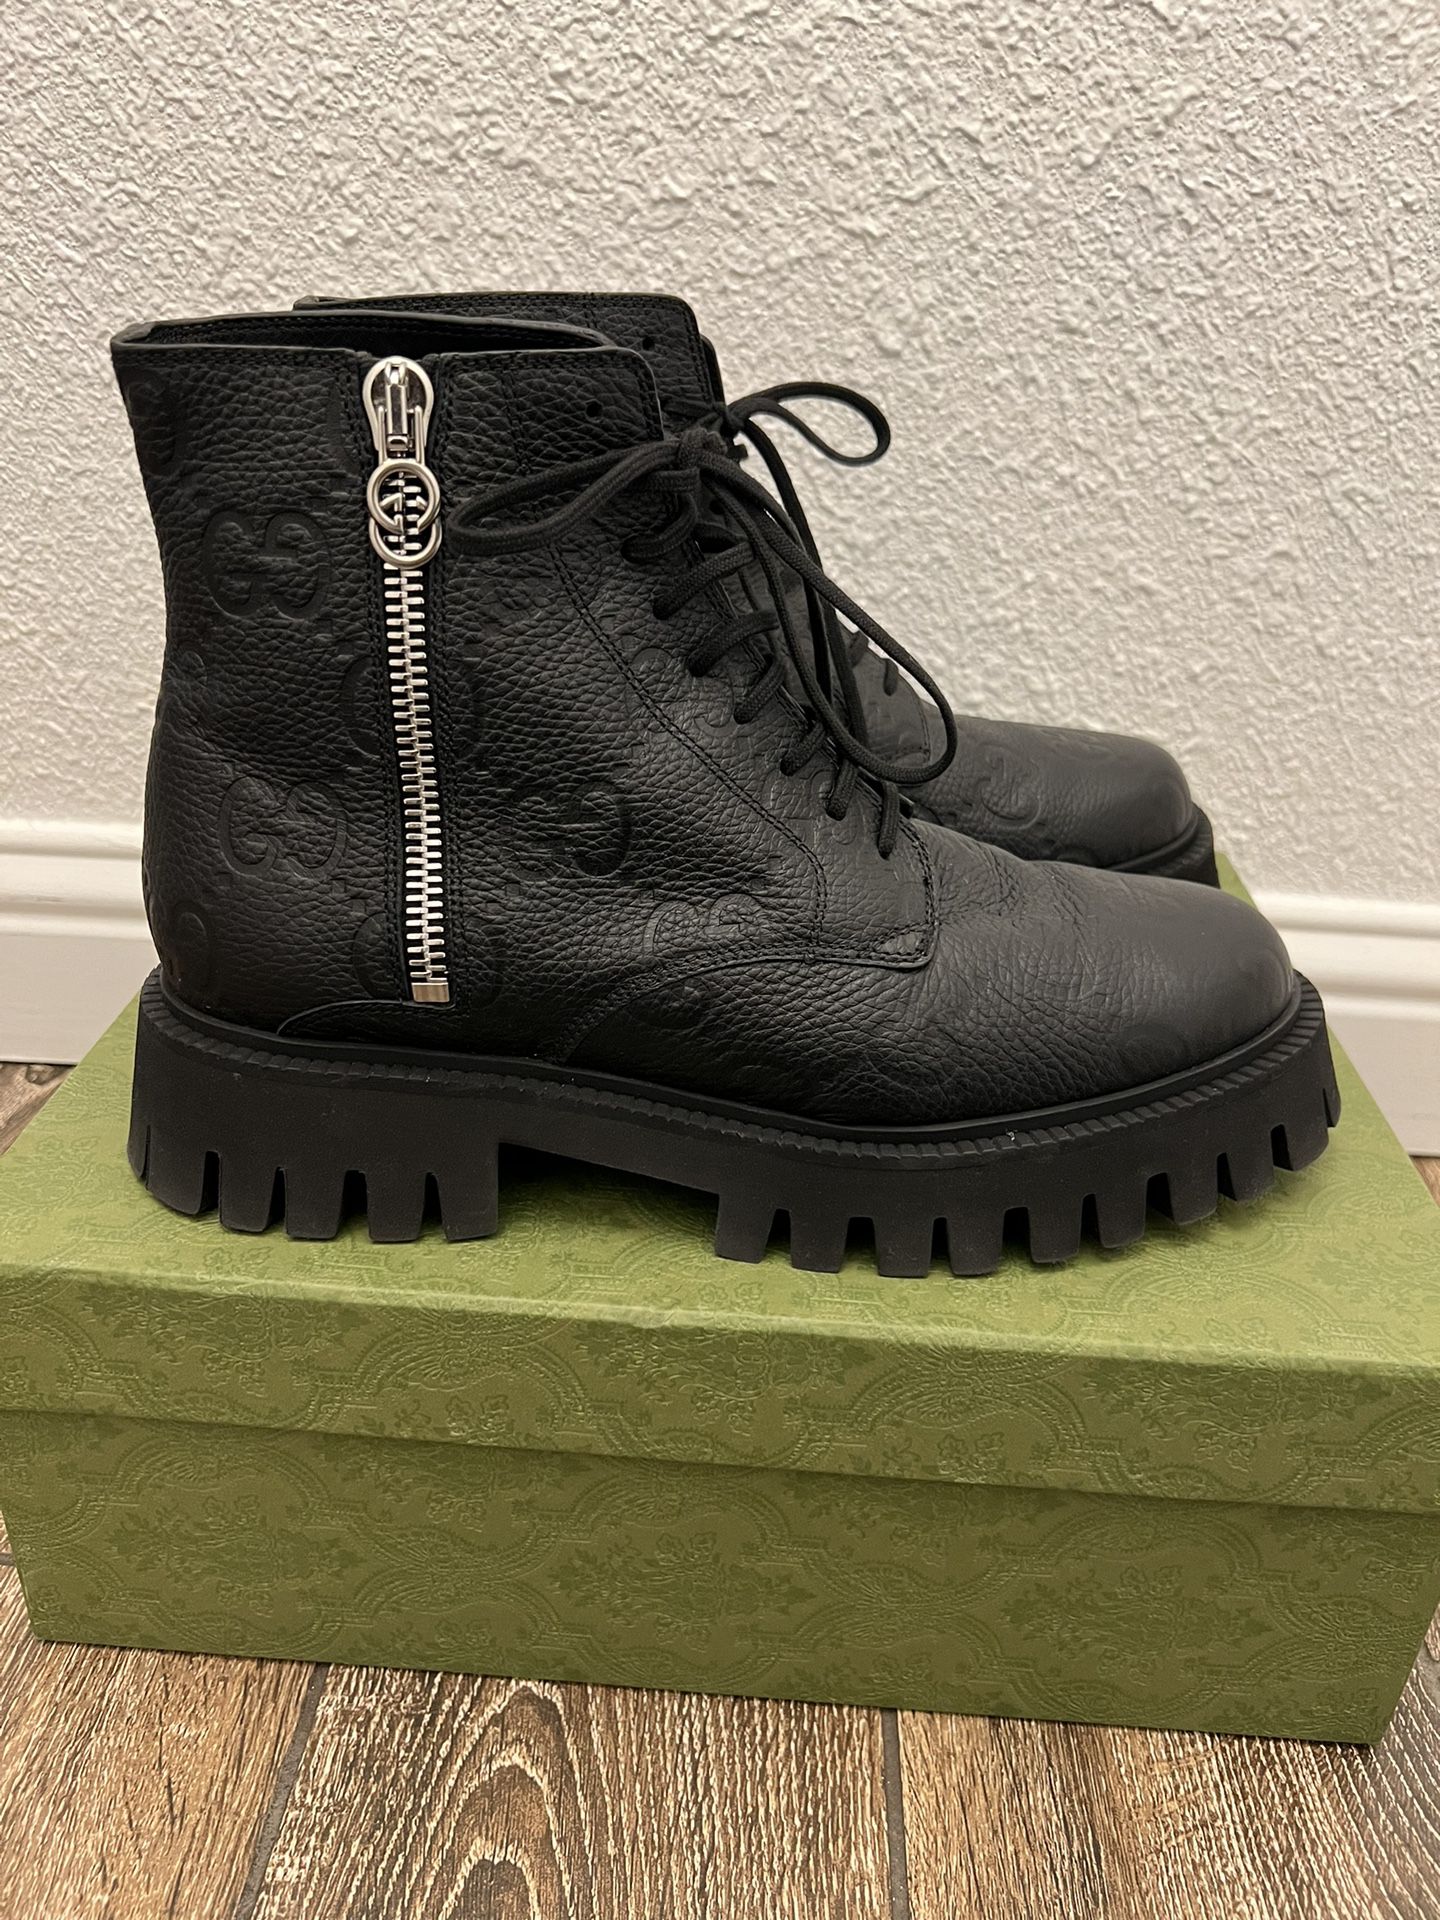 Men’s Authentic Gucci Combat Boots Size 9